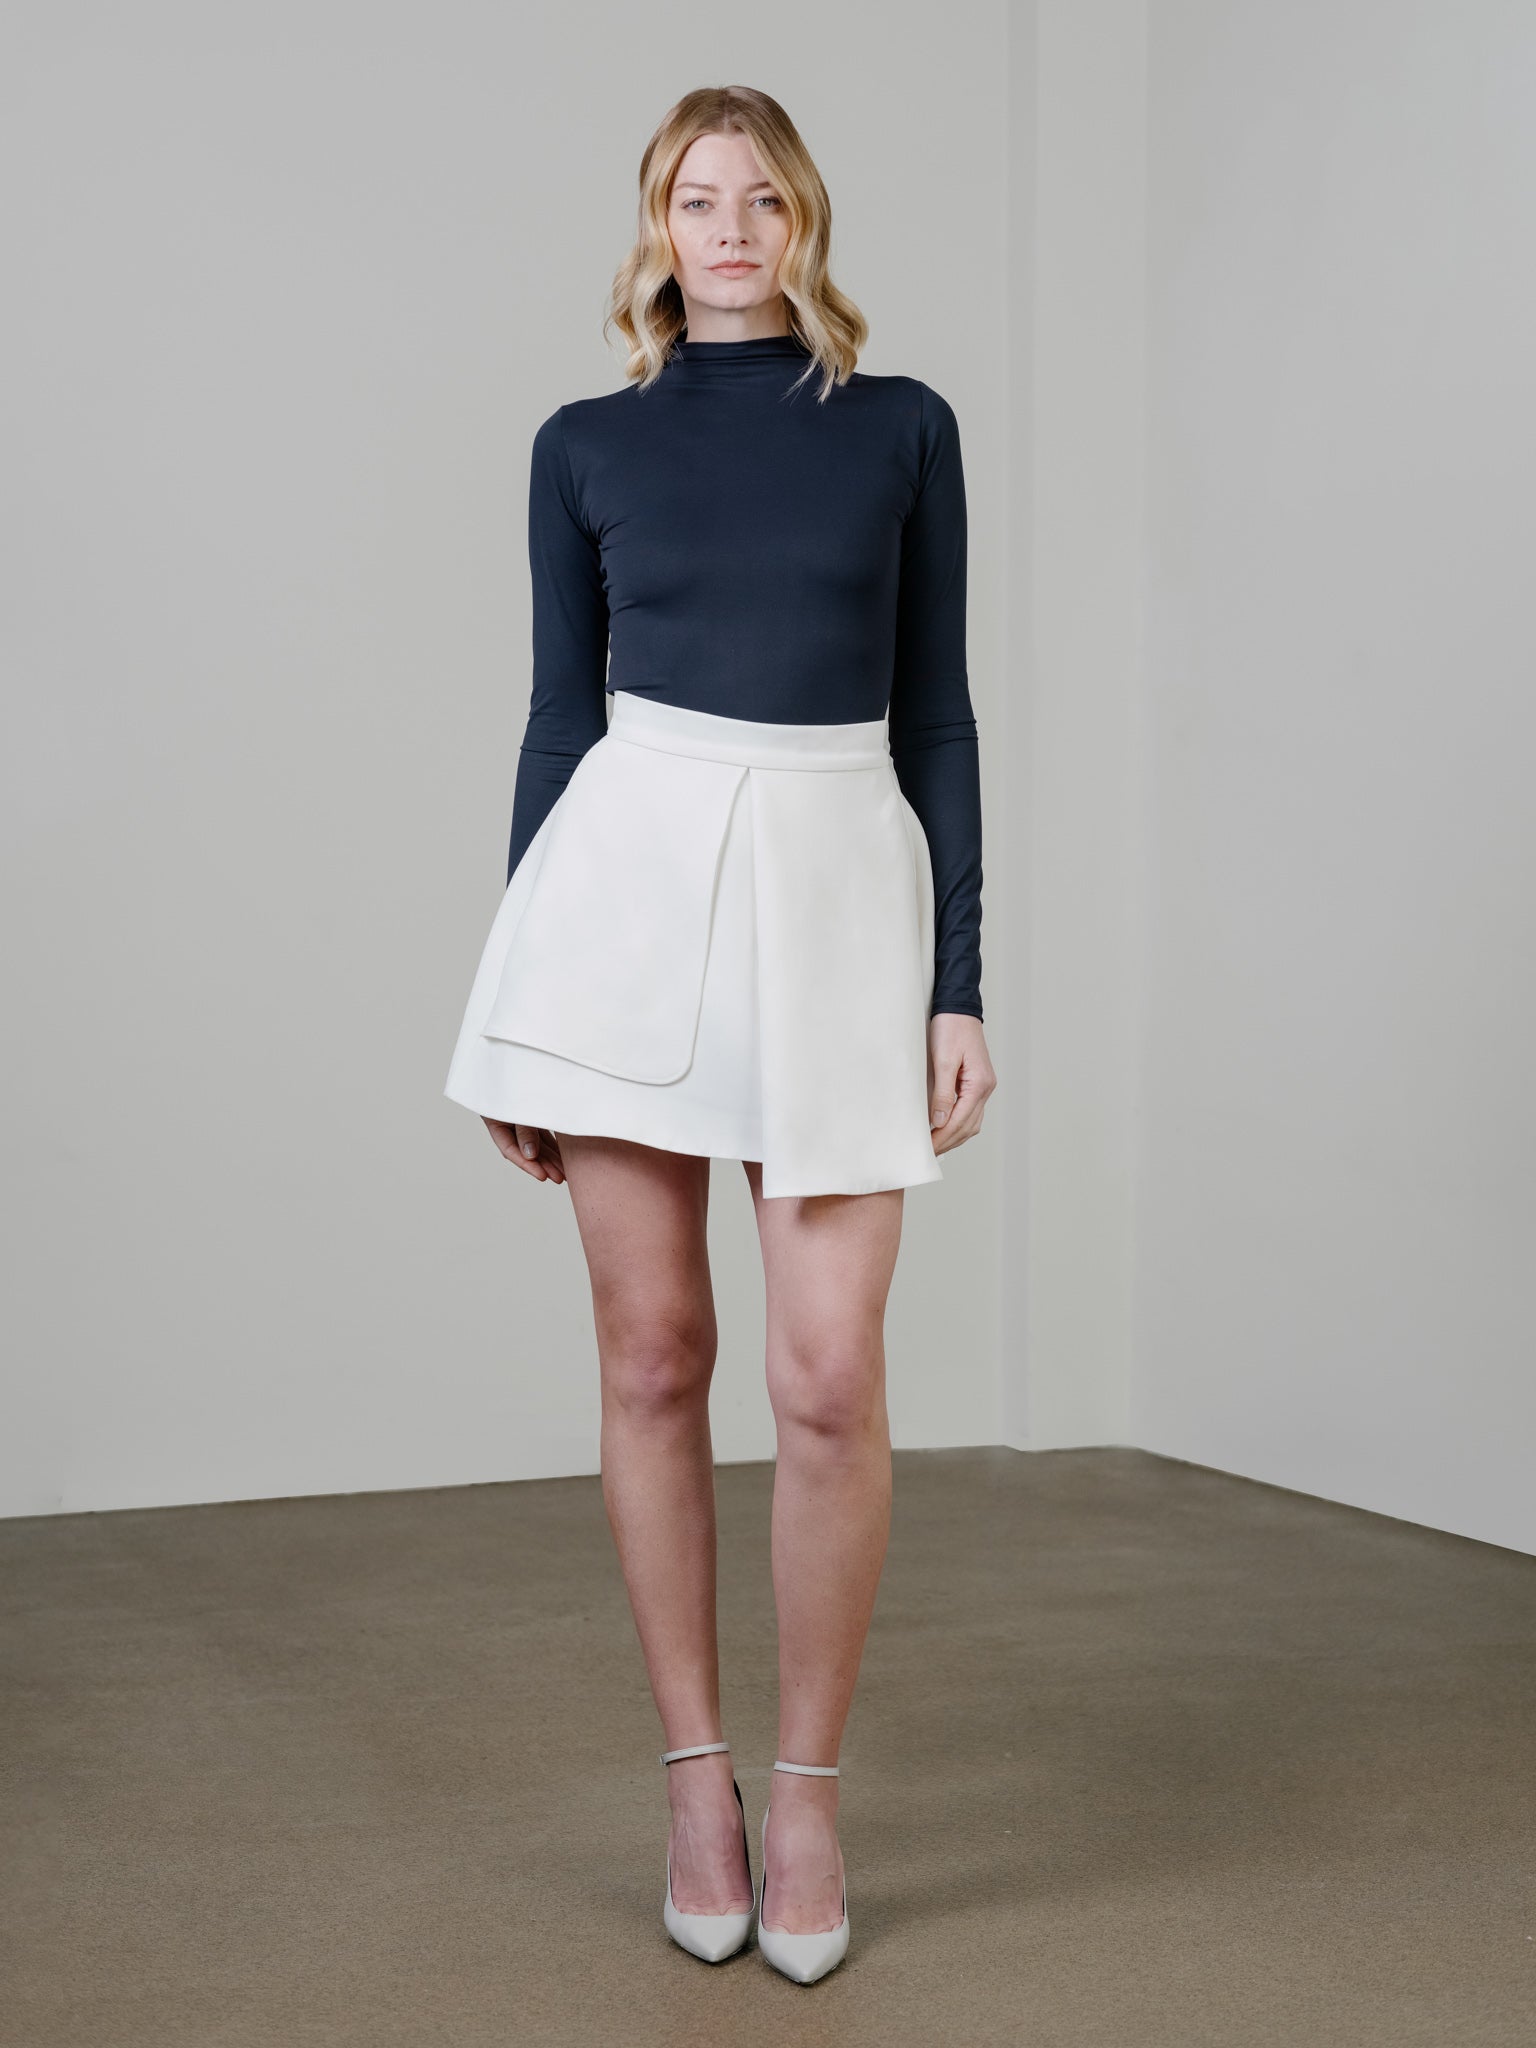 Zamsee Bellflower skirt mini length